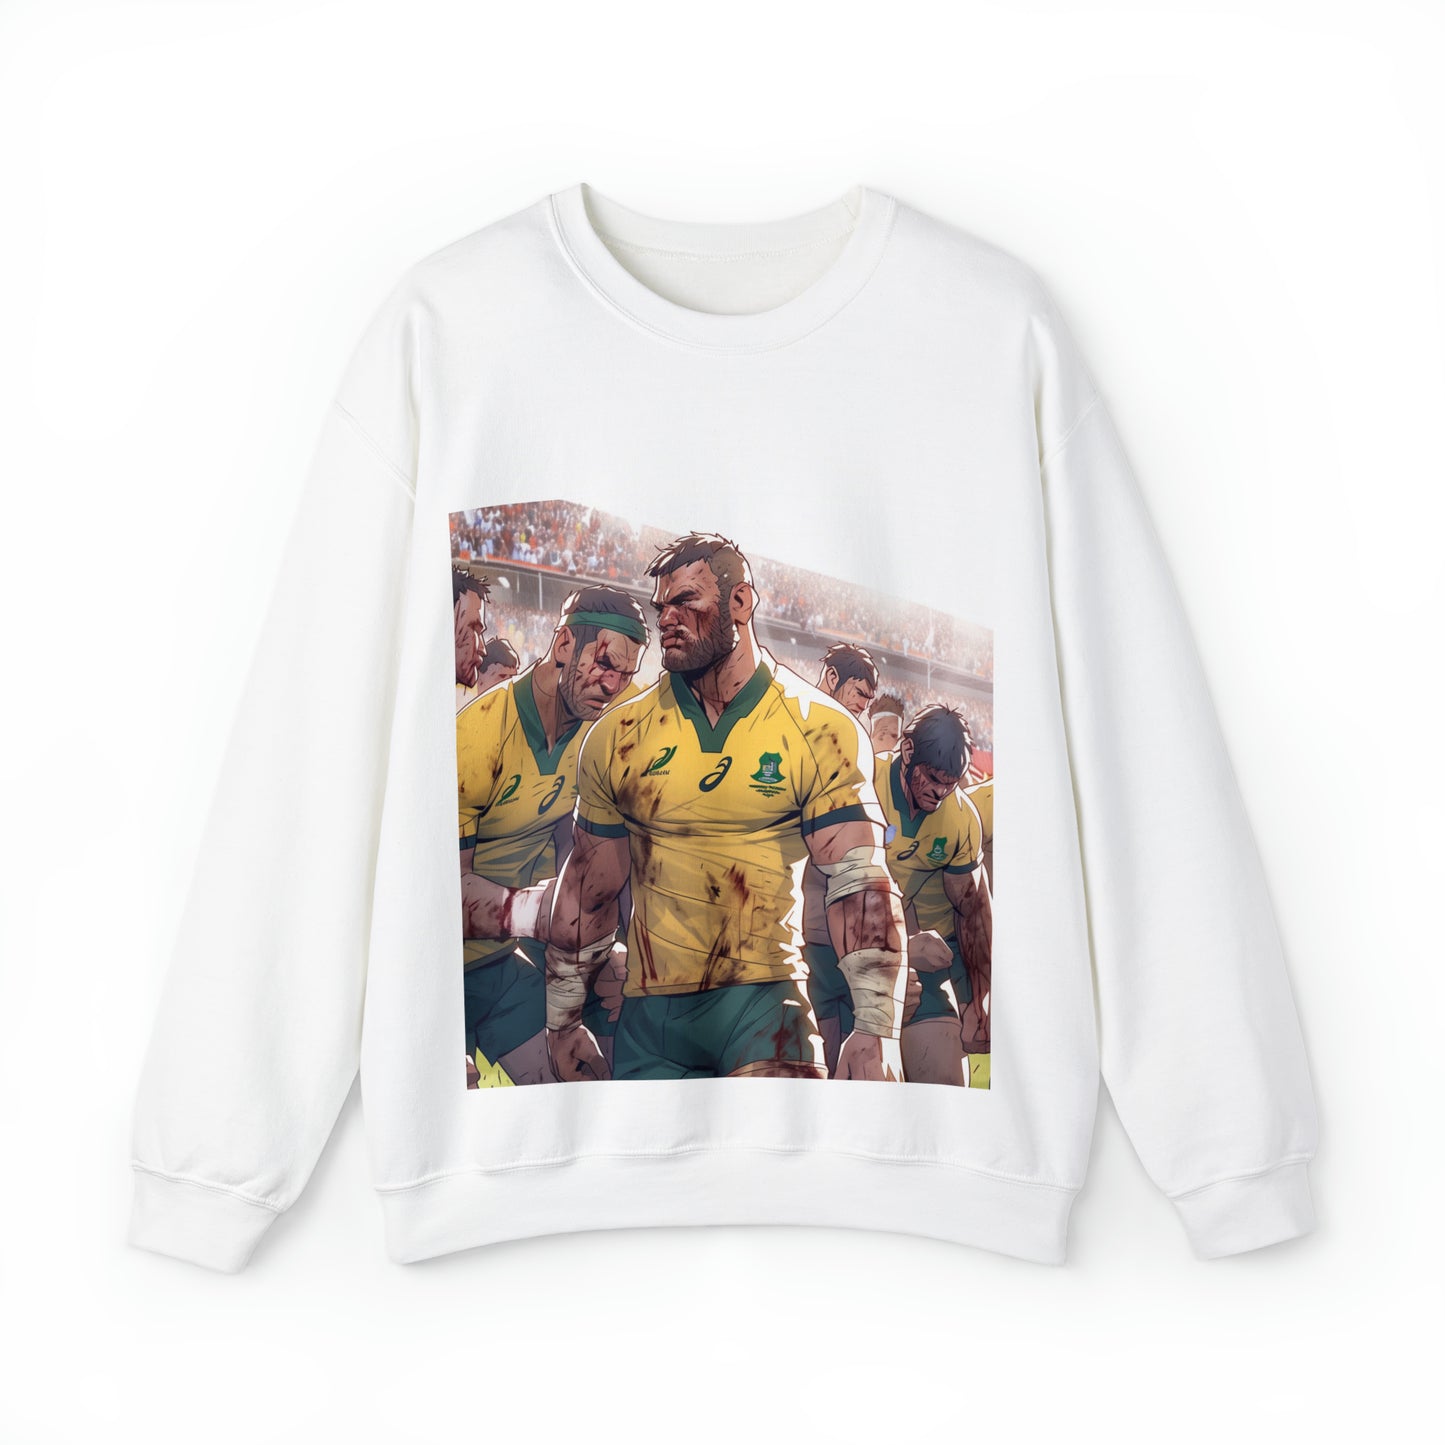 Aussie Aussie Aussie - light sweatshirt